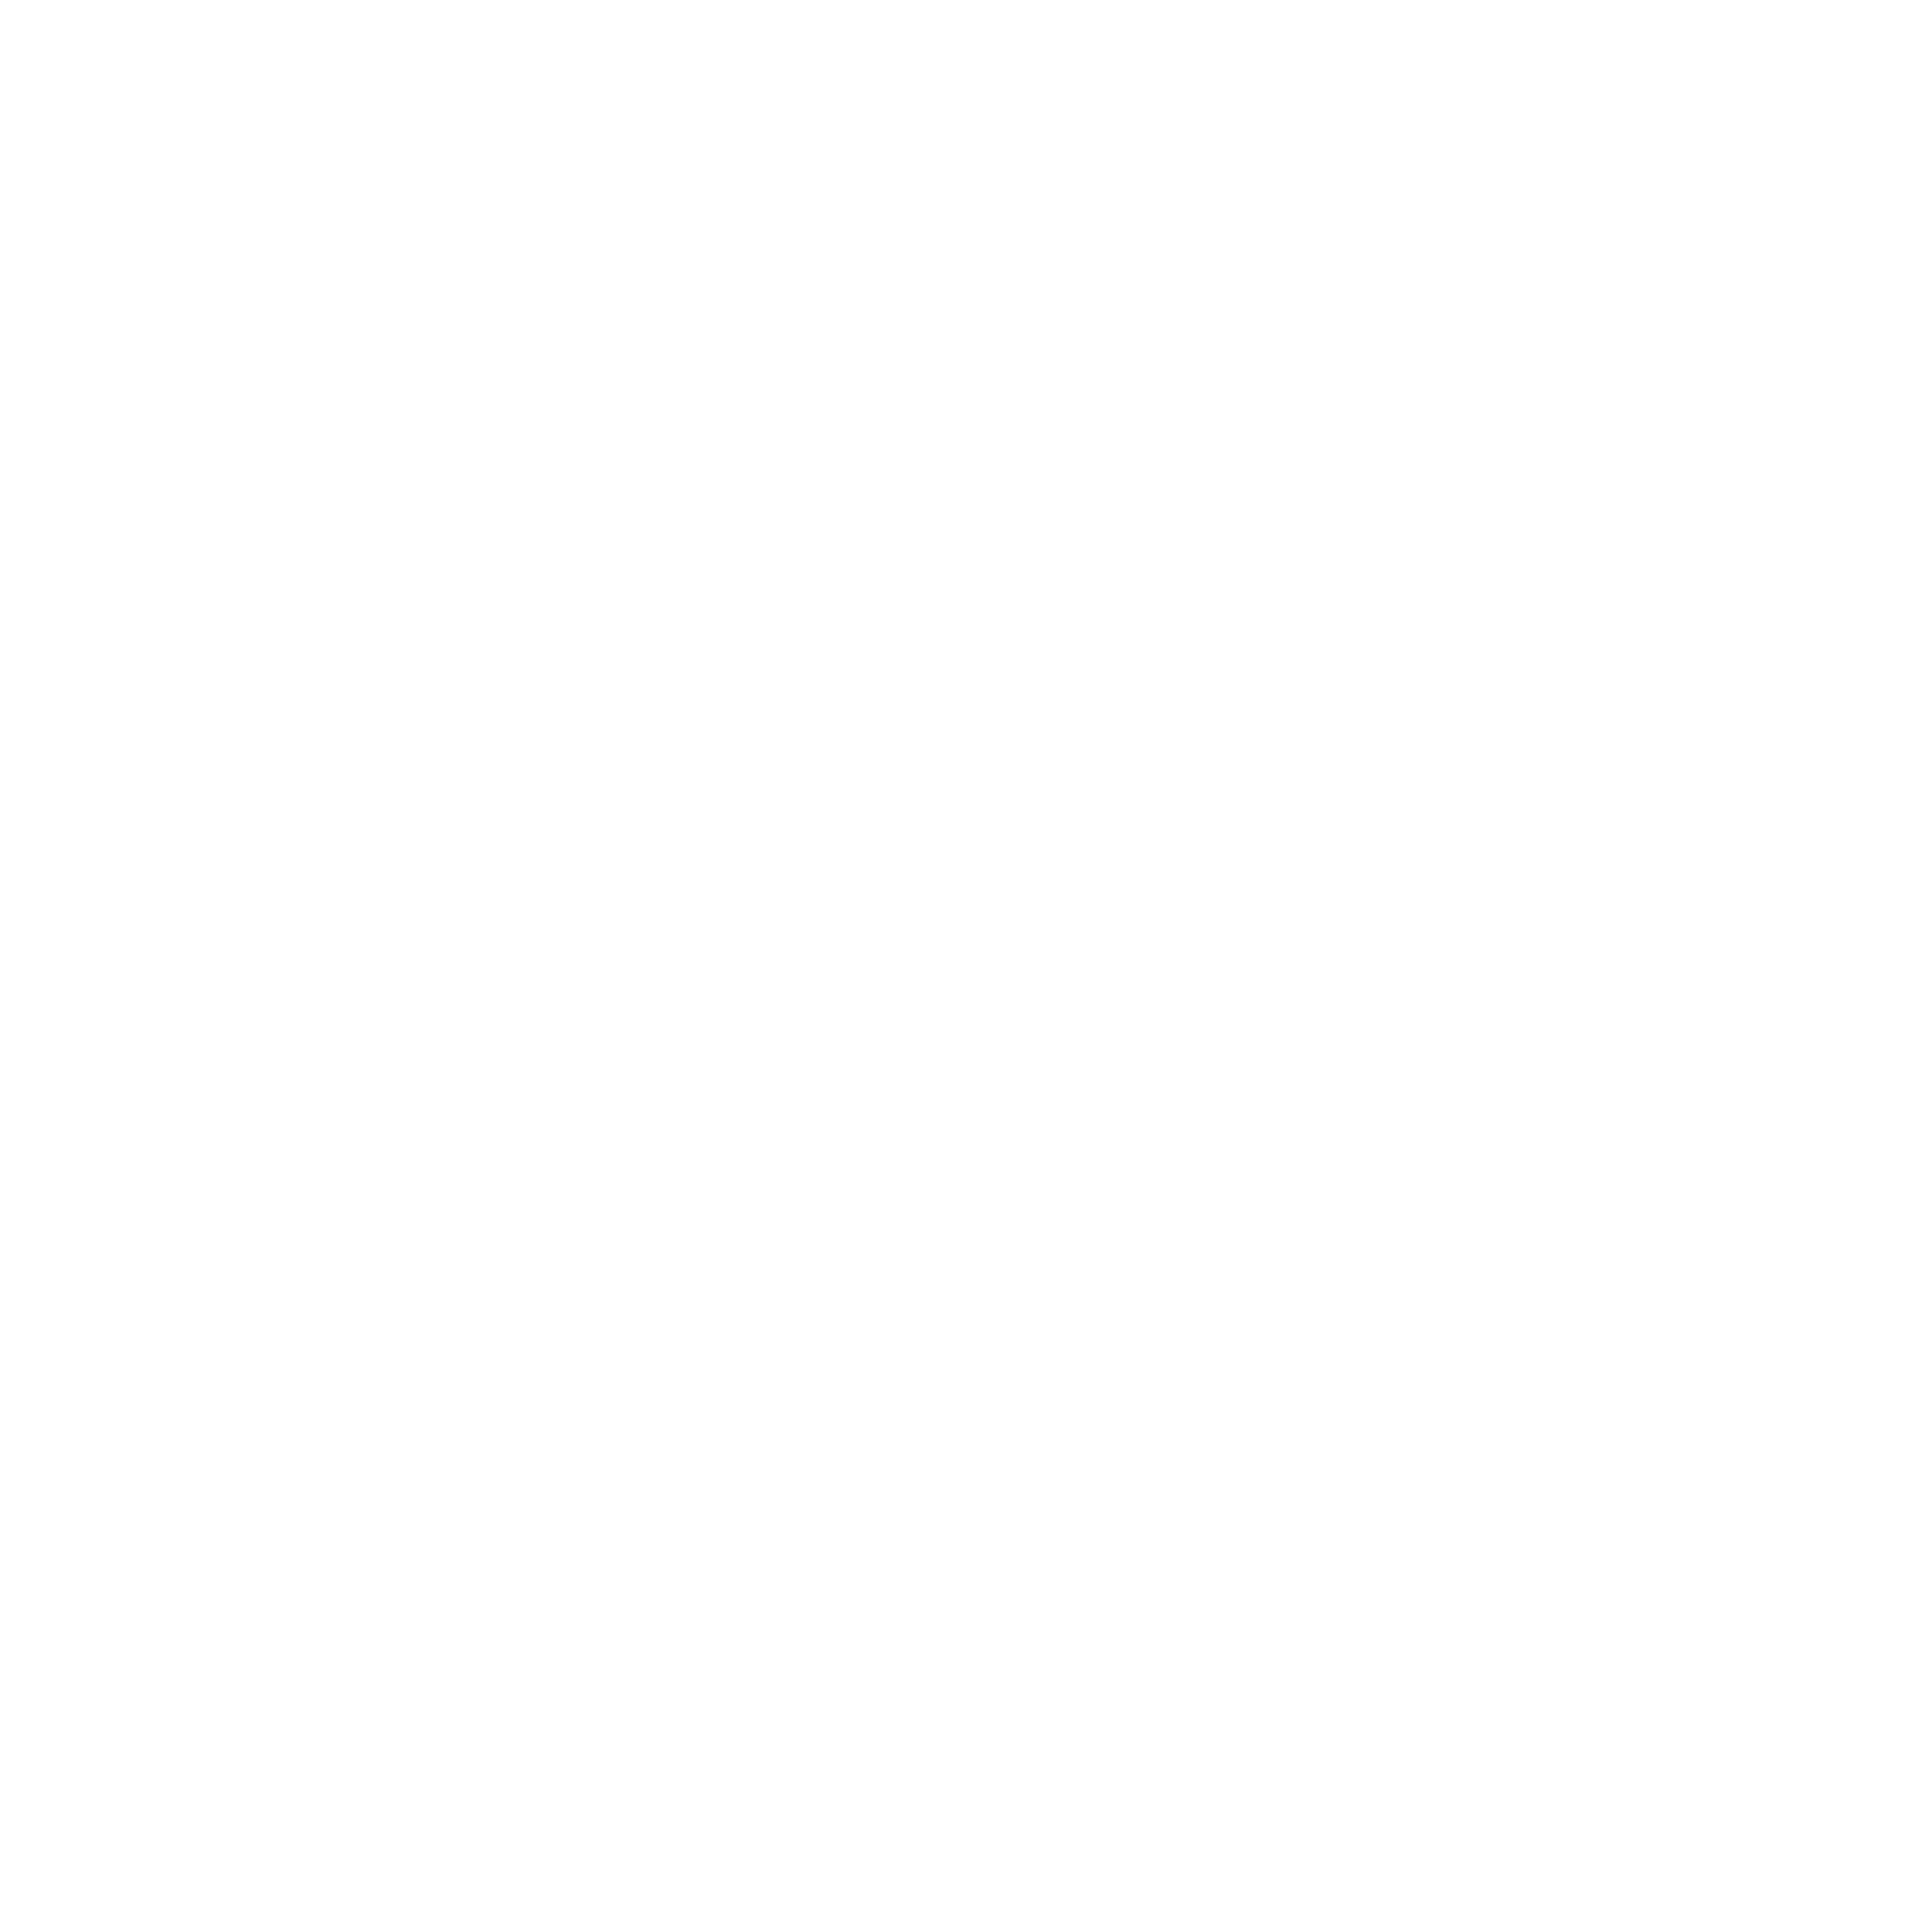 Programming keyboards